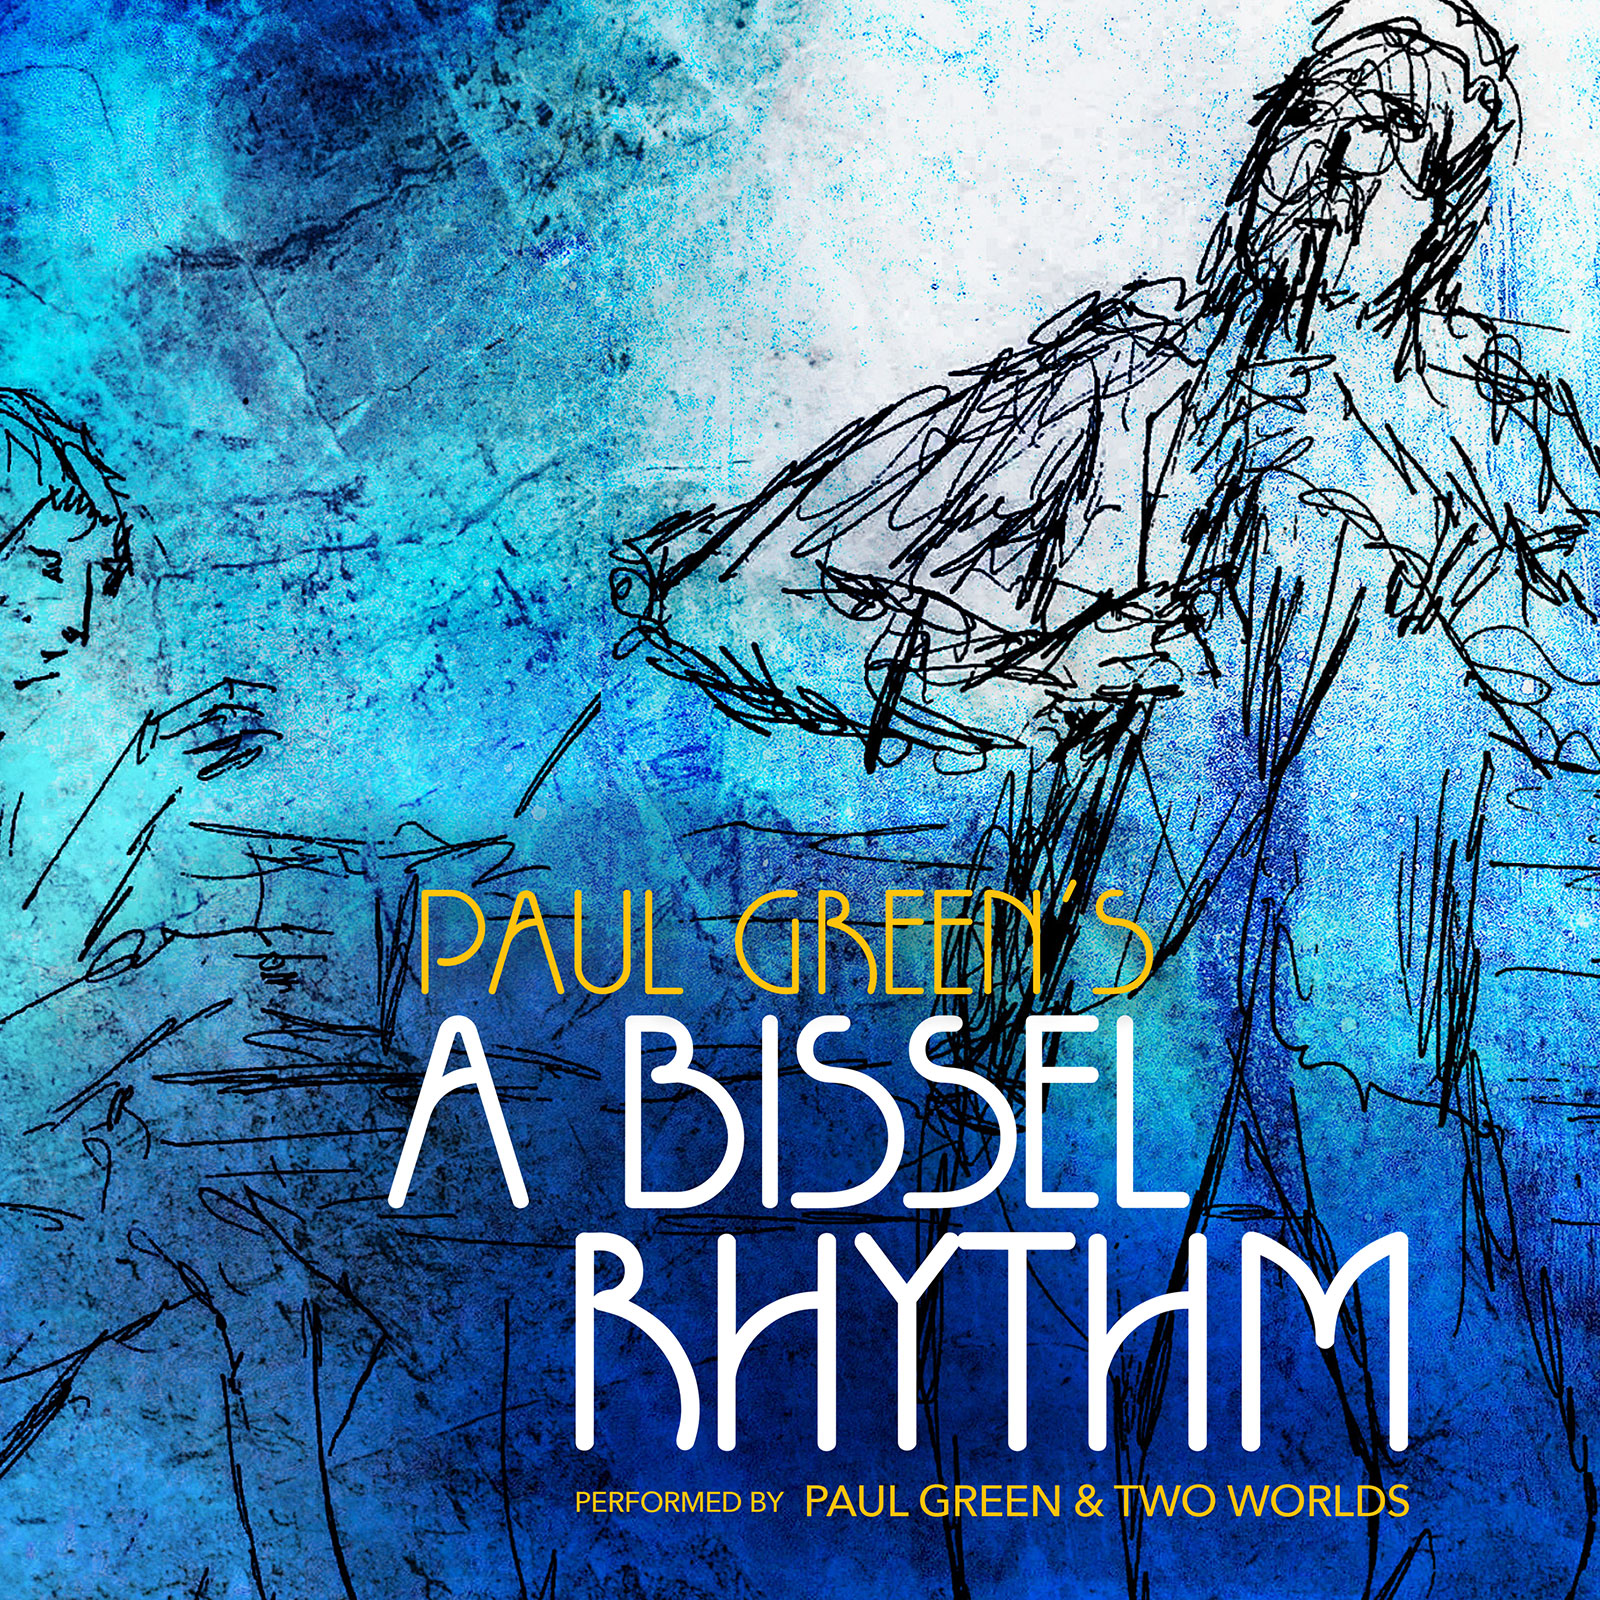 A Bissell Rhythm